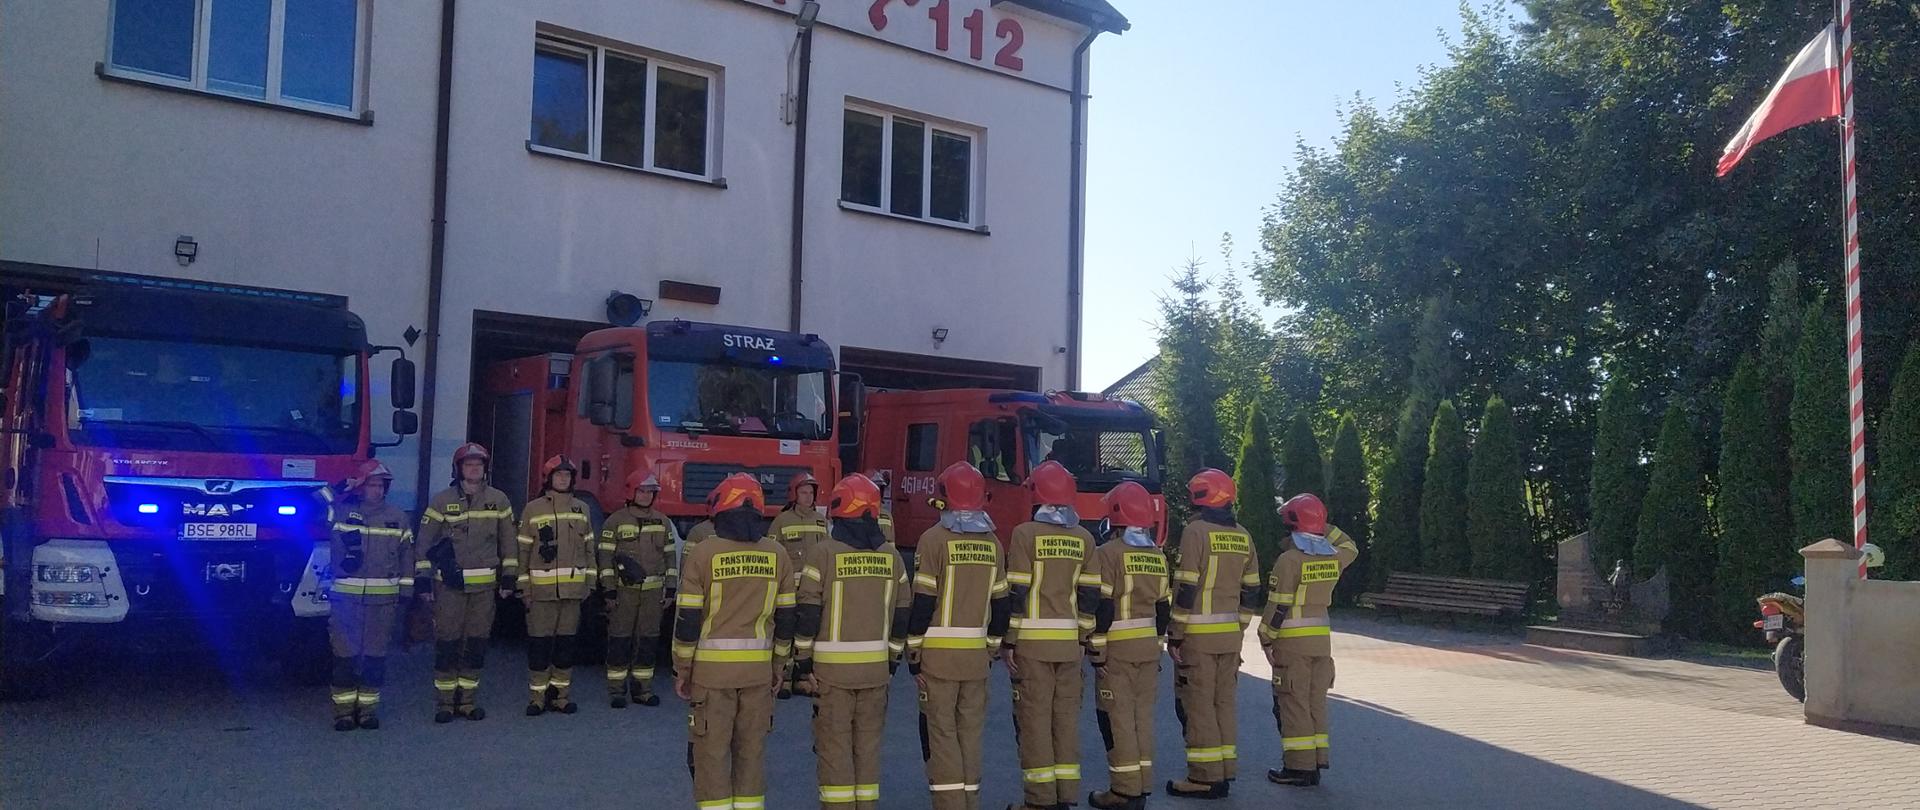 Hołd strażakowi Komendy Głównej Państwowej Straży Pożarnej, który zginął na służbie. 